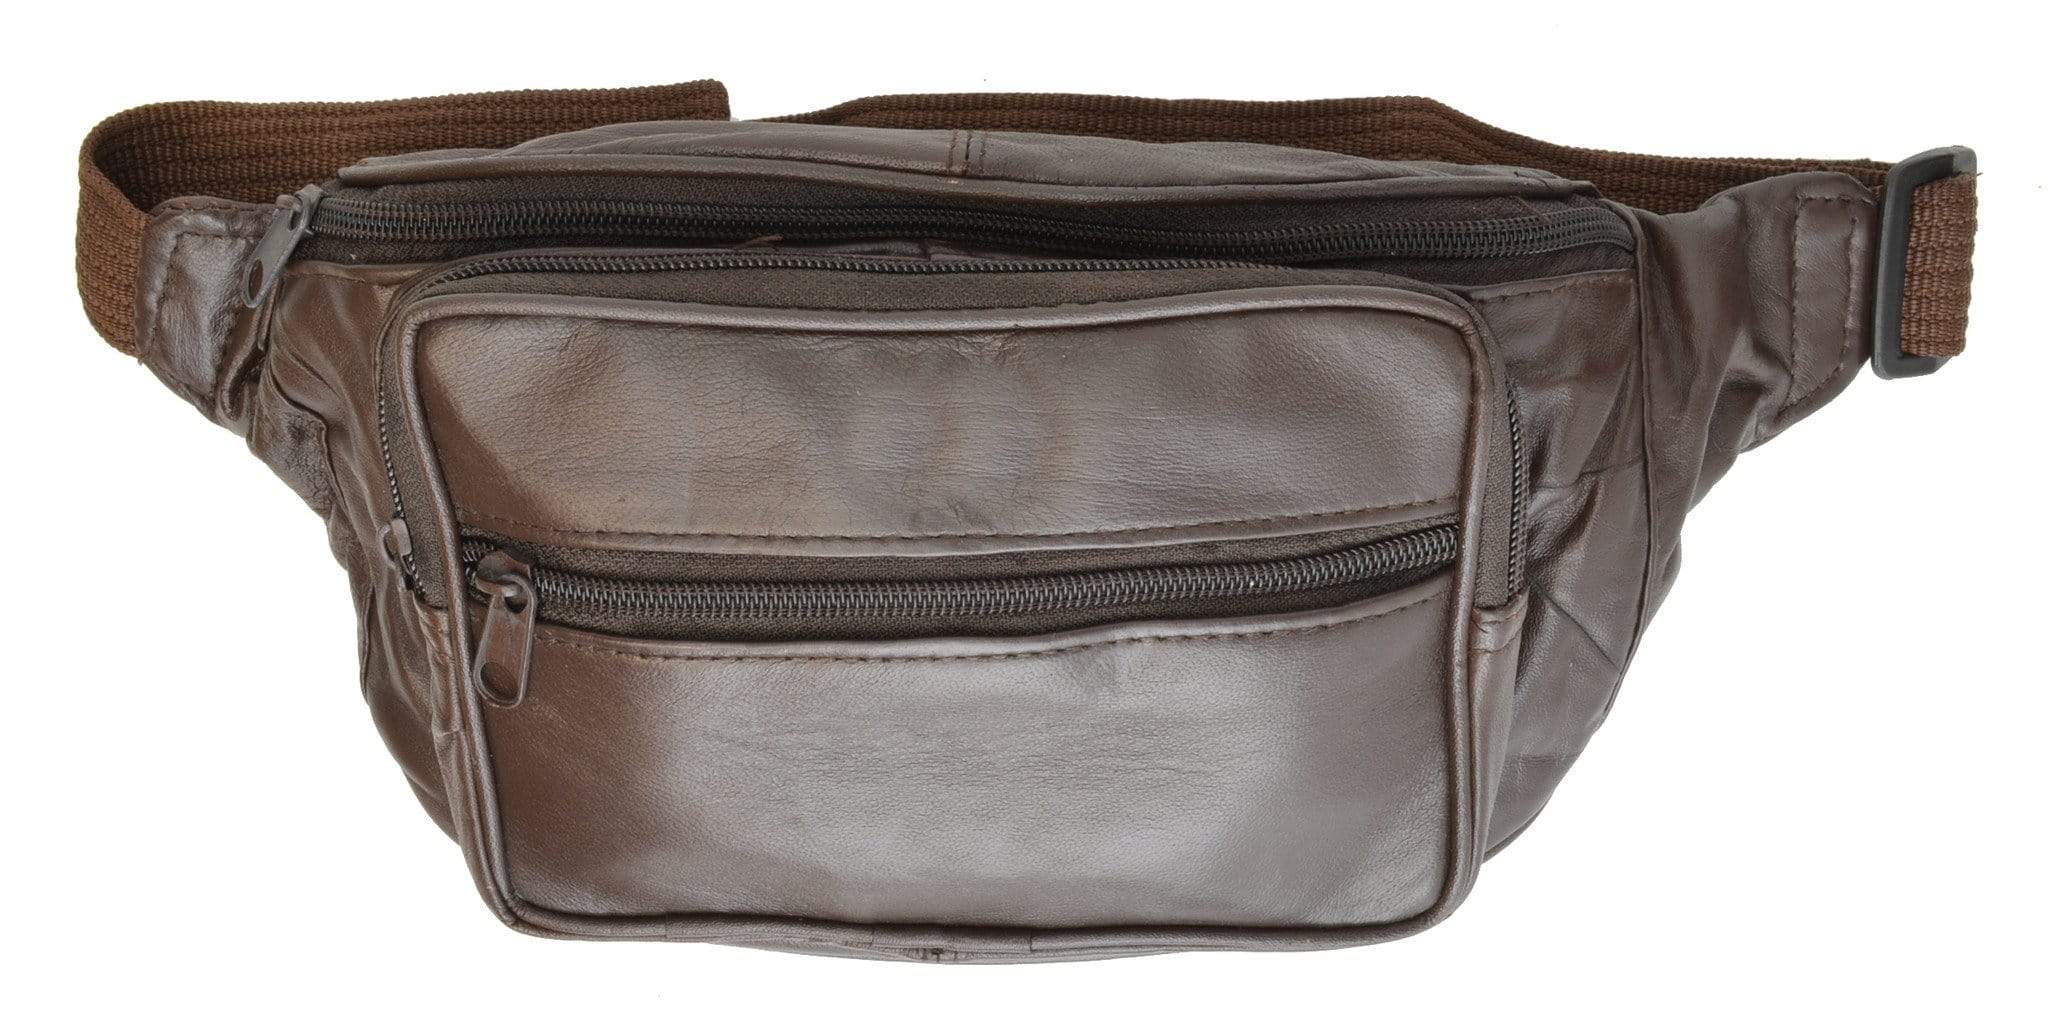 Men's Genuine Leather Belt Bag Fanny Pack Belt Bag